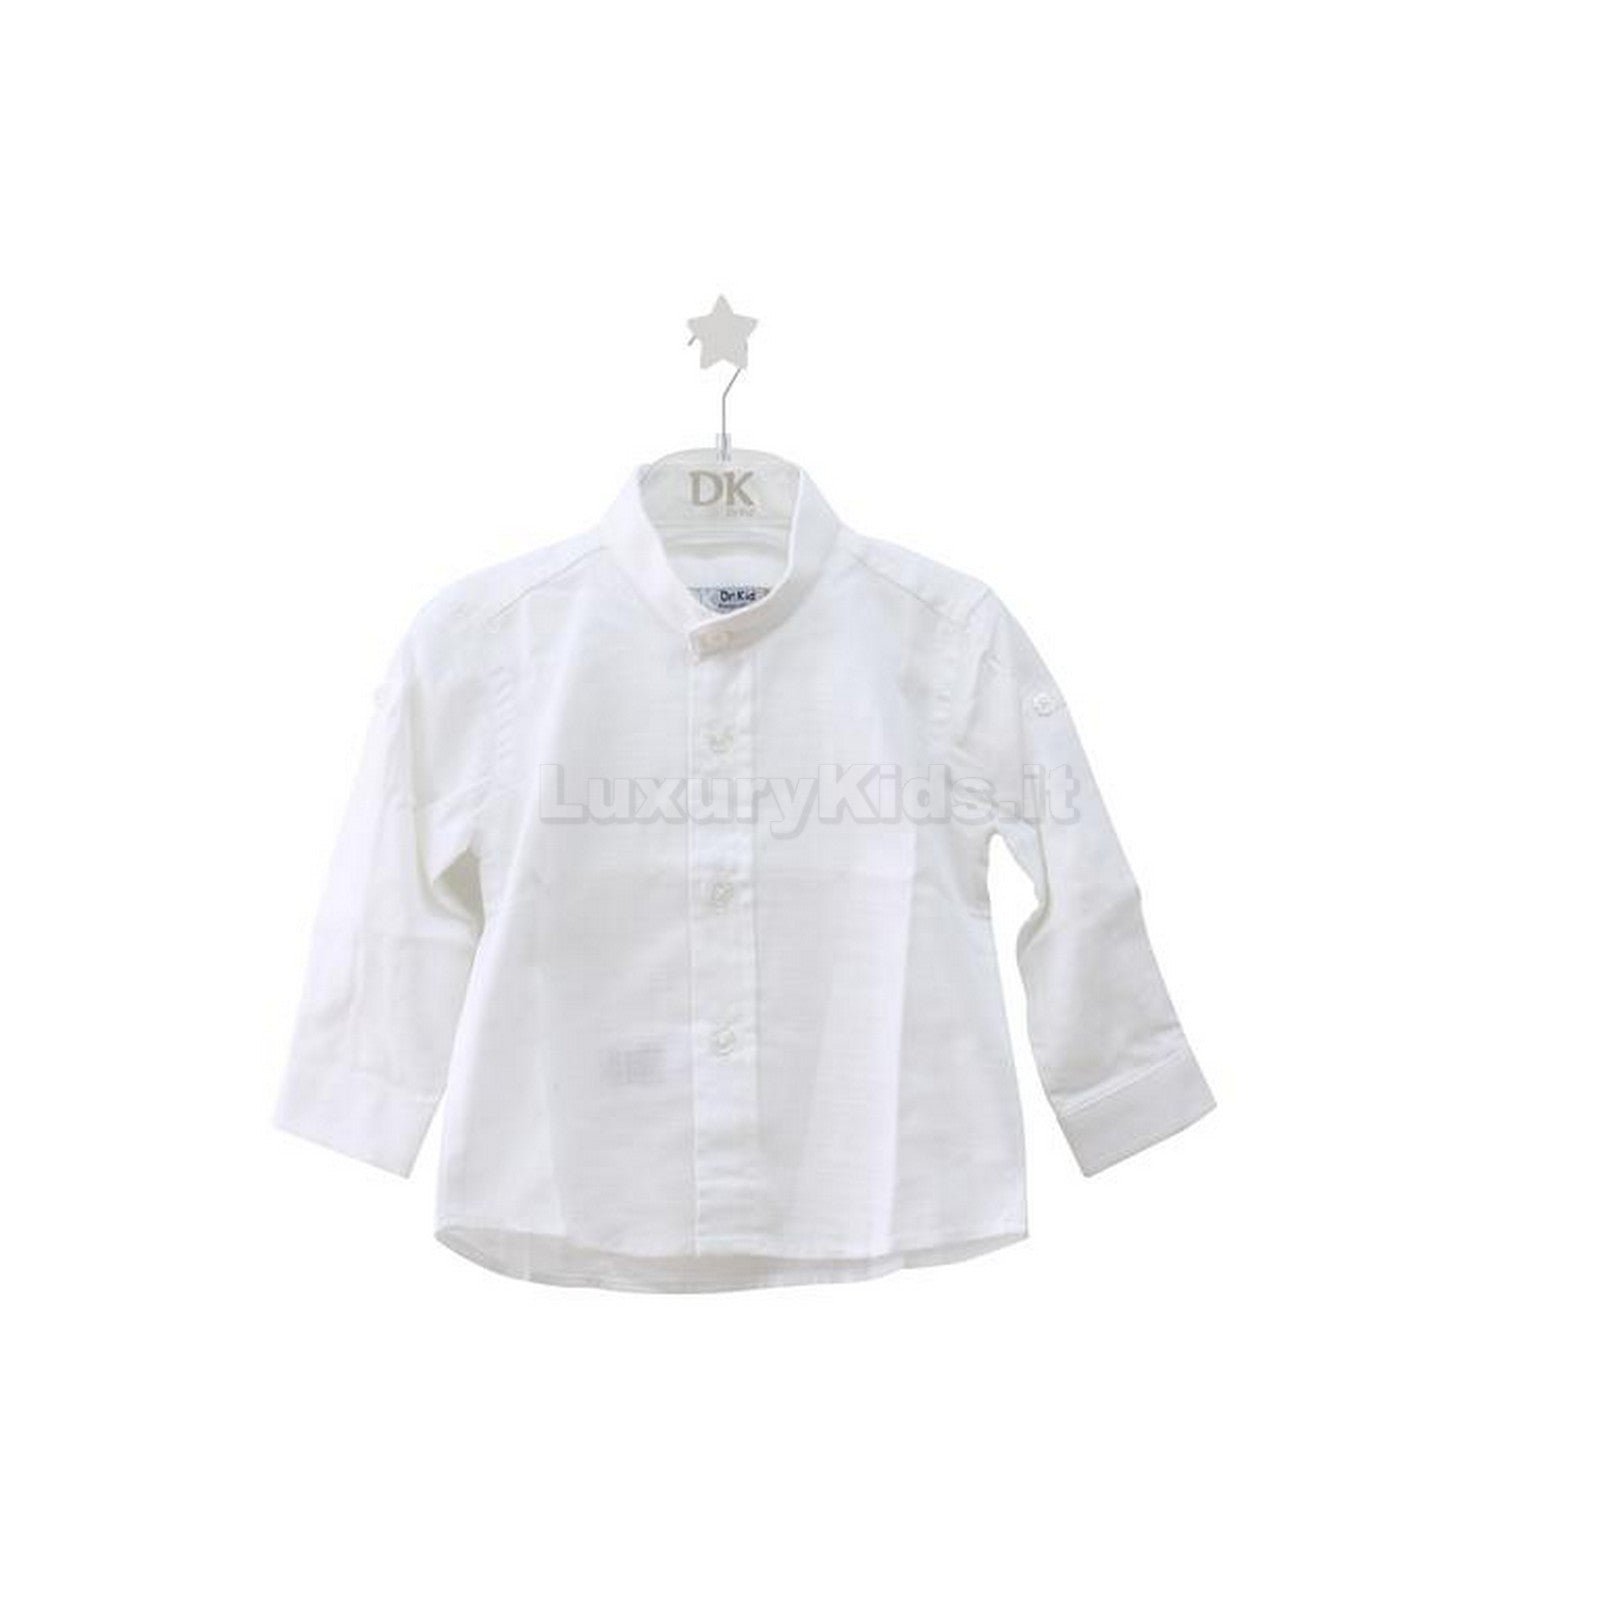 Camicia Coreana in cotone Fiammato Bianco Bambino 568 Dr.kids - DR.KID - LuxuryKids